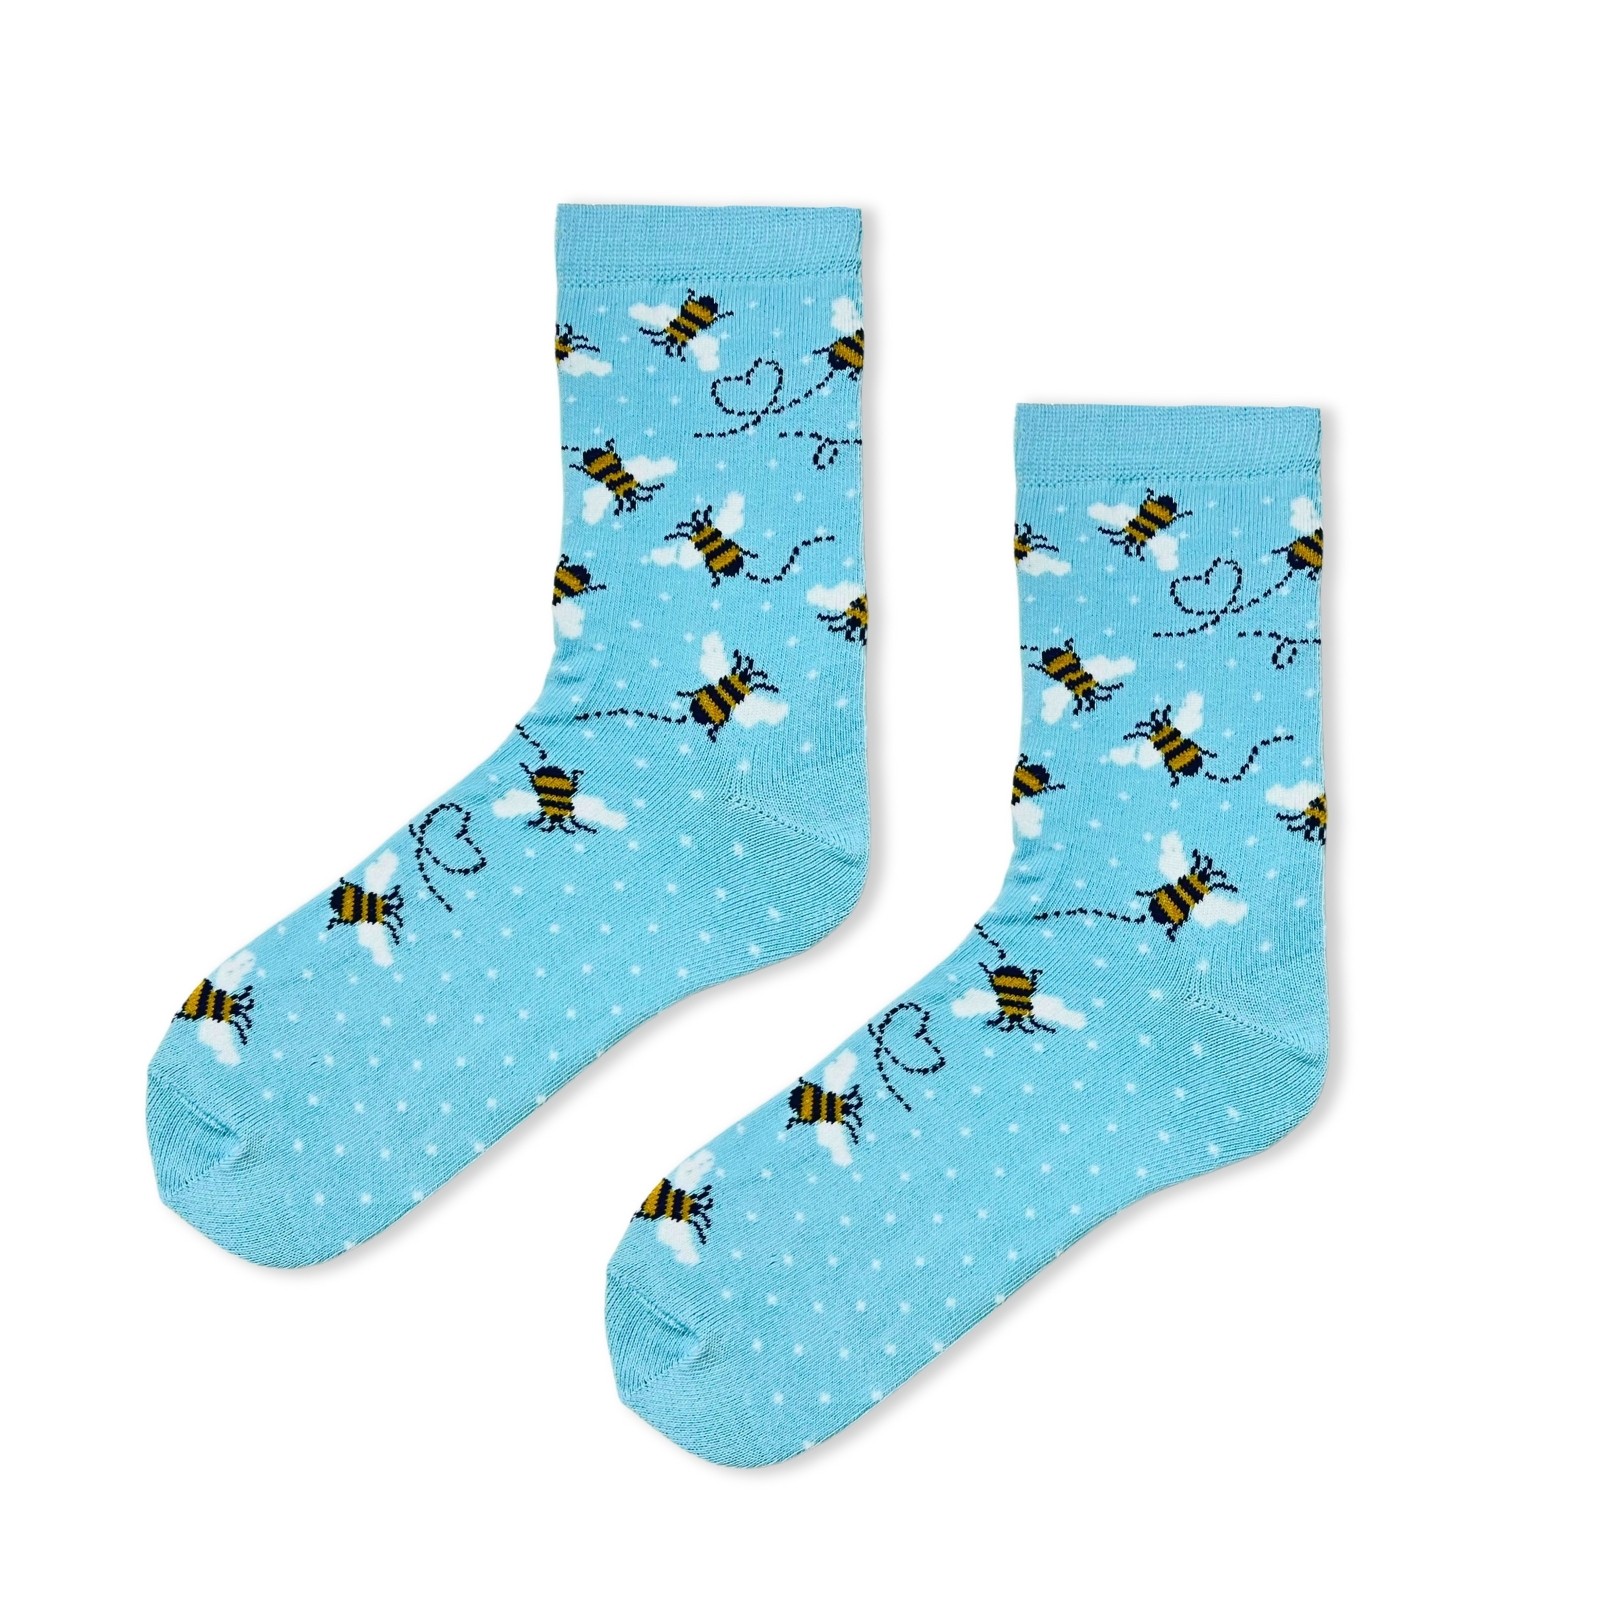 Arı Desenli Şekilli Mavi Renkli Soket Çorap